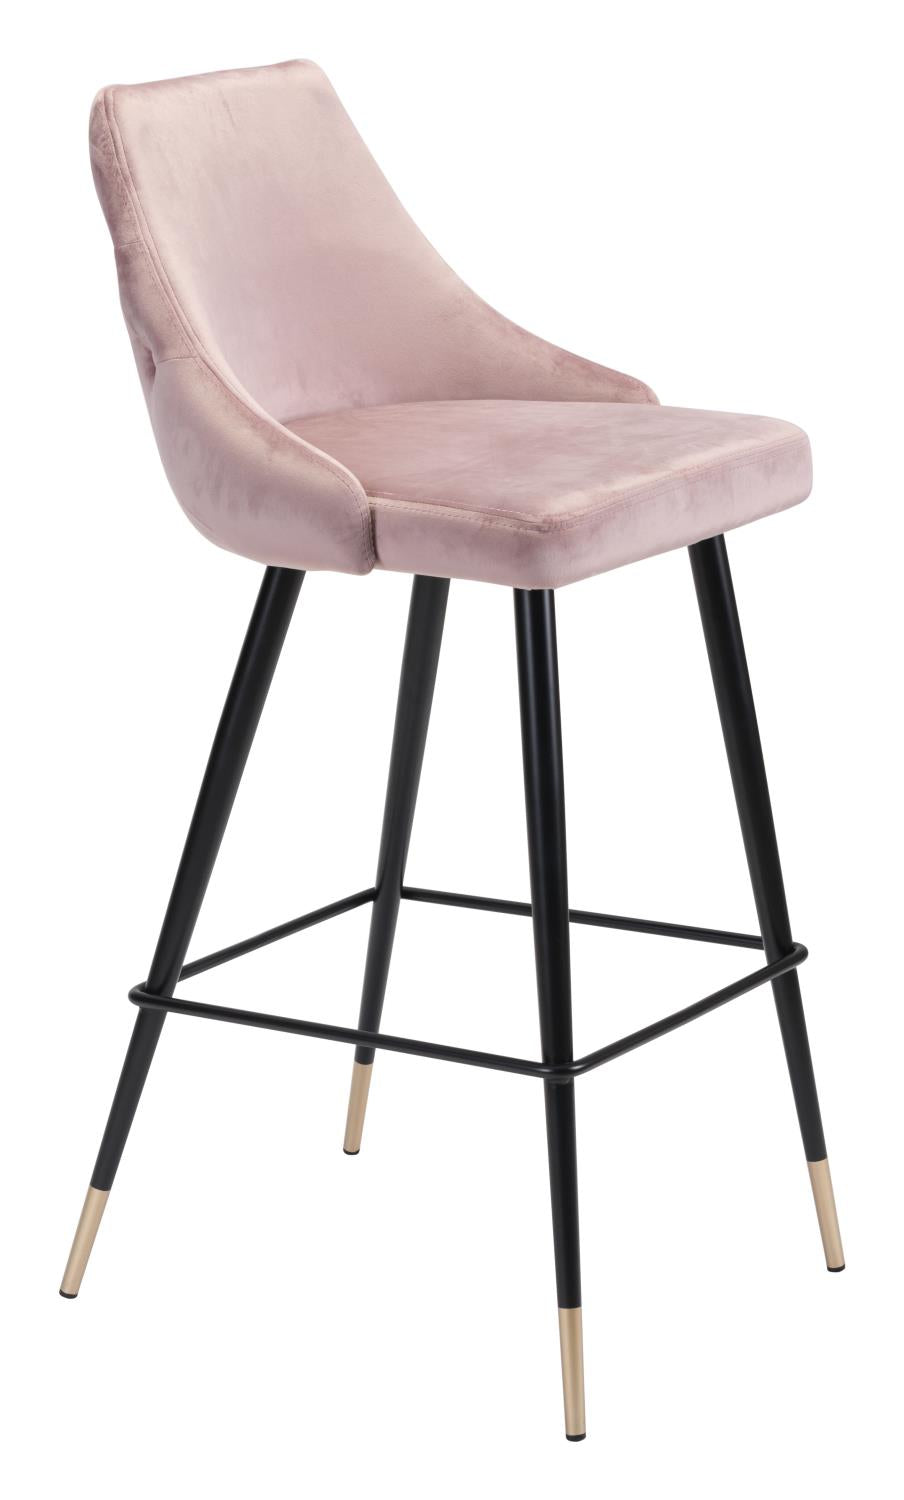 Travis Bar Chair - Blush Velvet